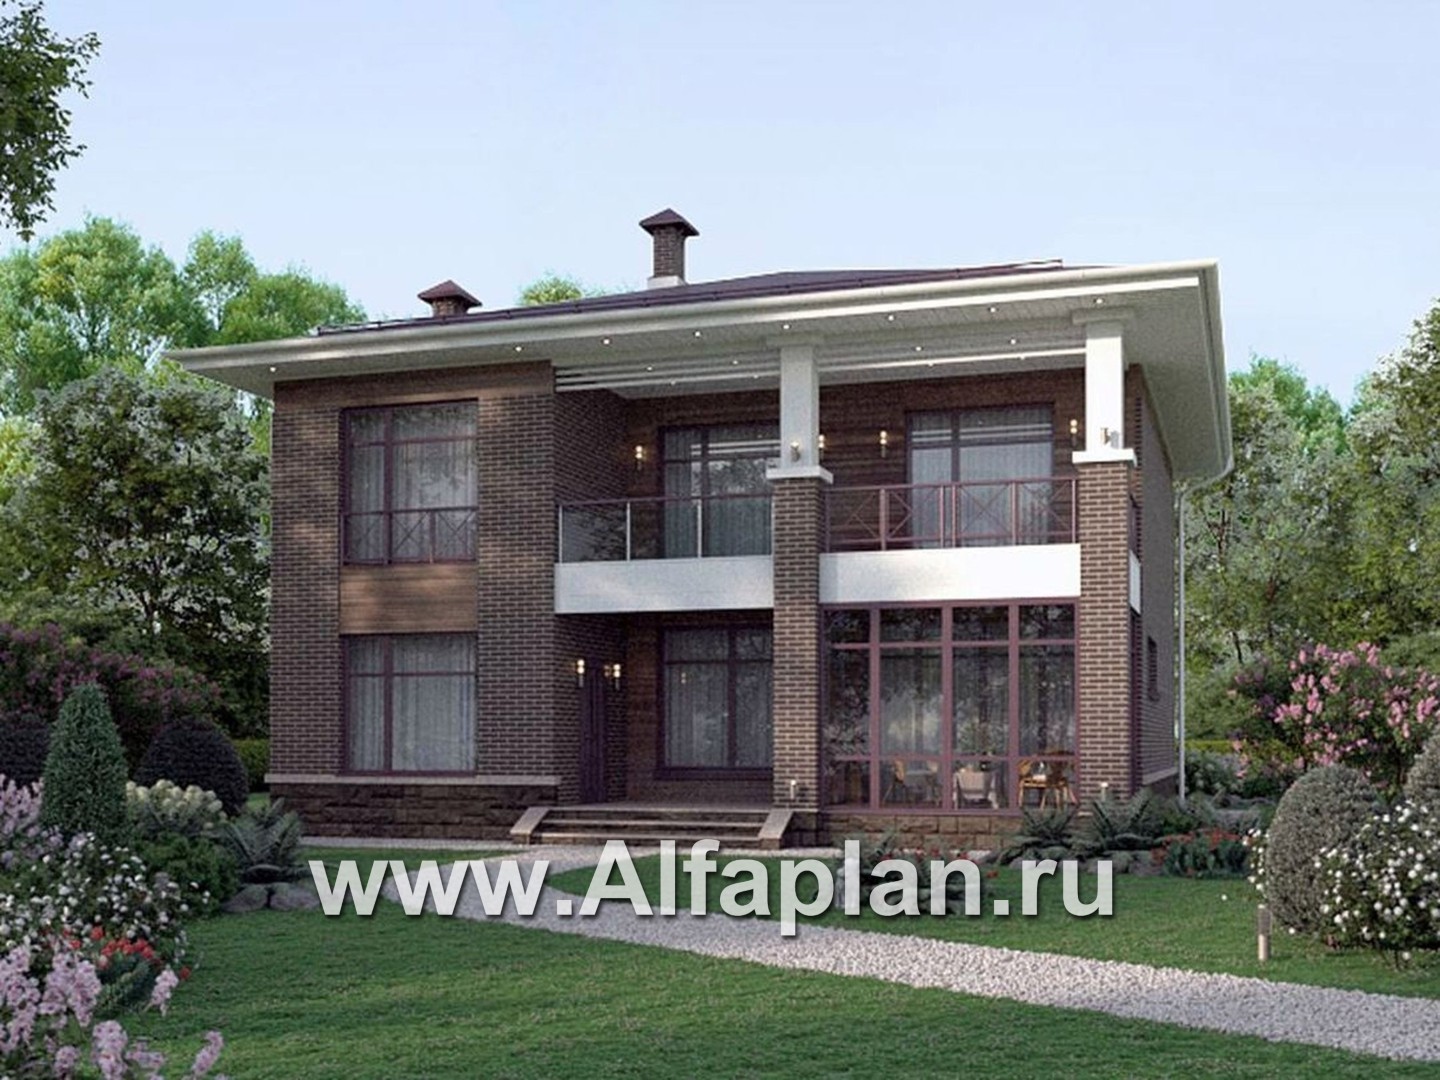 Проекты домов Альфаплан - "Римские каникулы" - проект дома в классическом стиле - дополнительное изображение №2